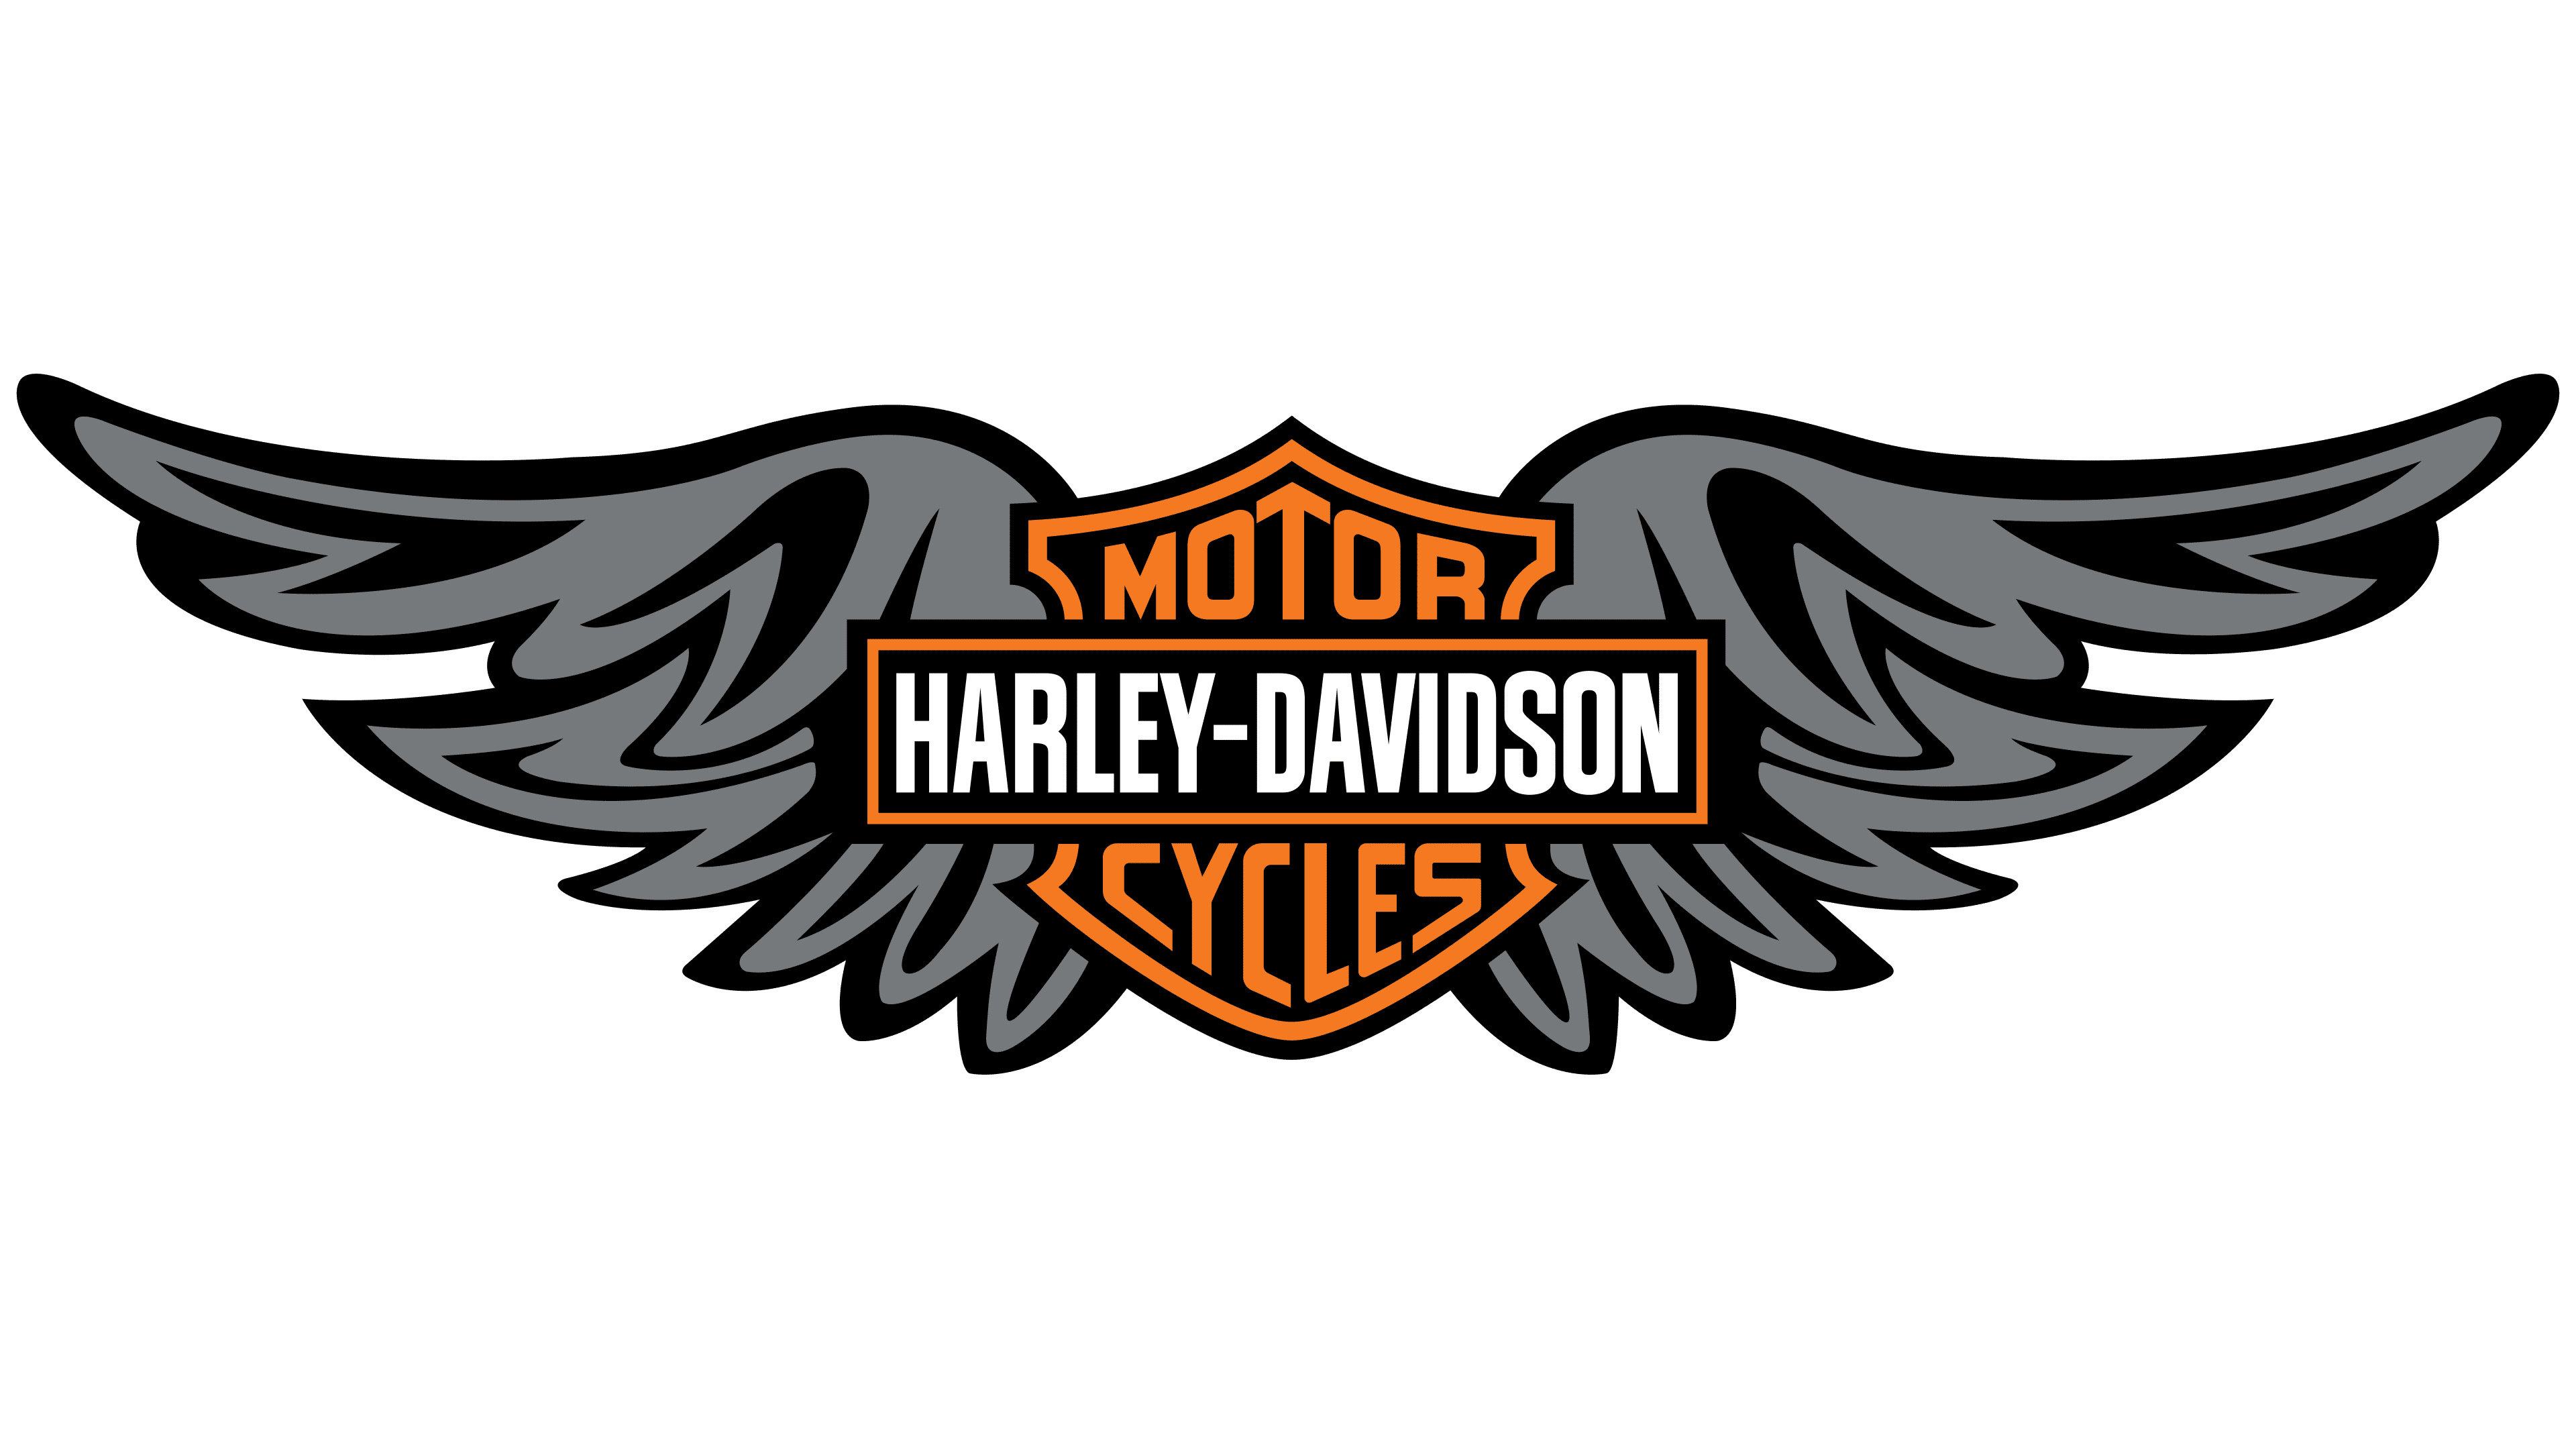 Harley Davidson Logo Wallpapers 44 Images Inside